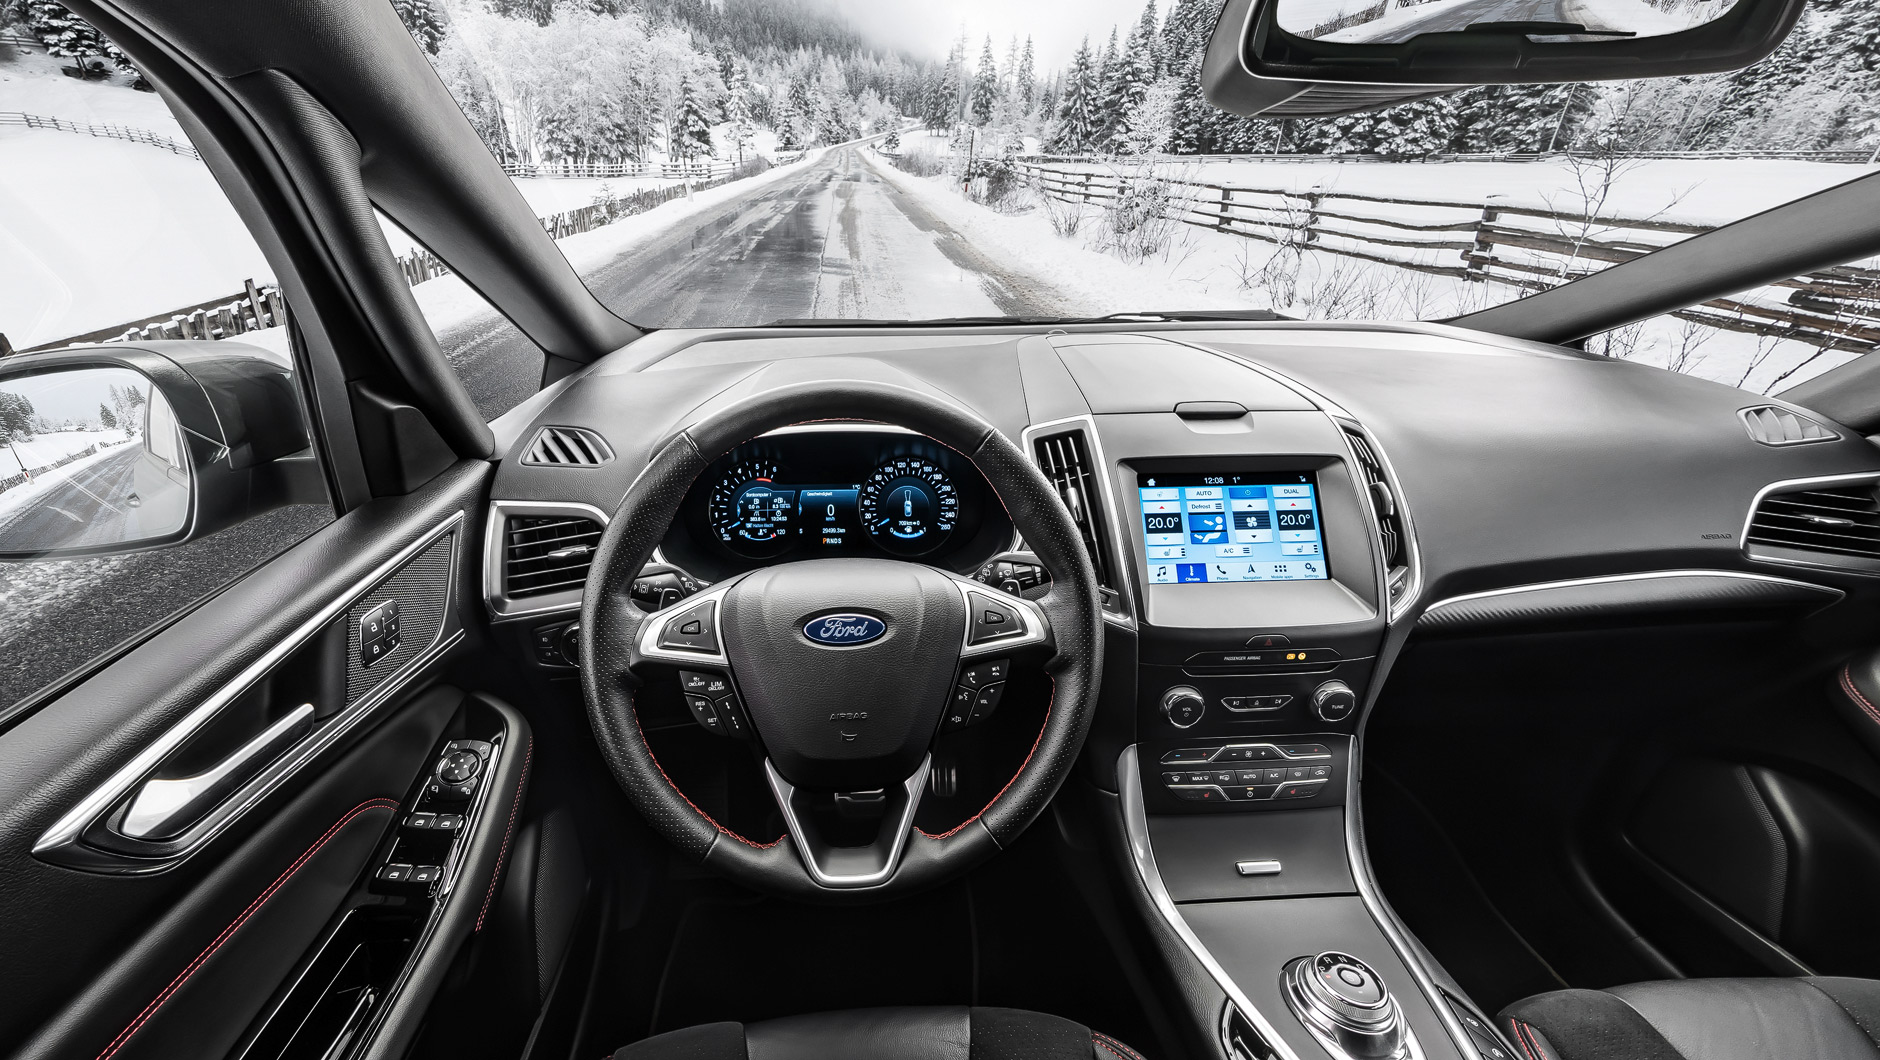 Autoinnenraum / Interior eines Ford S-MAX ST-Line. Foto aufgenommen aus der Perspektive des Fahrers. Das Auto steht auf einer nassen Straße in den verschneiten Alpen.